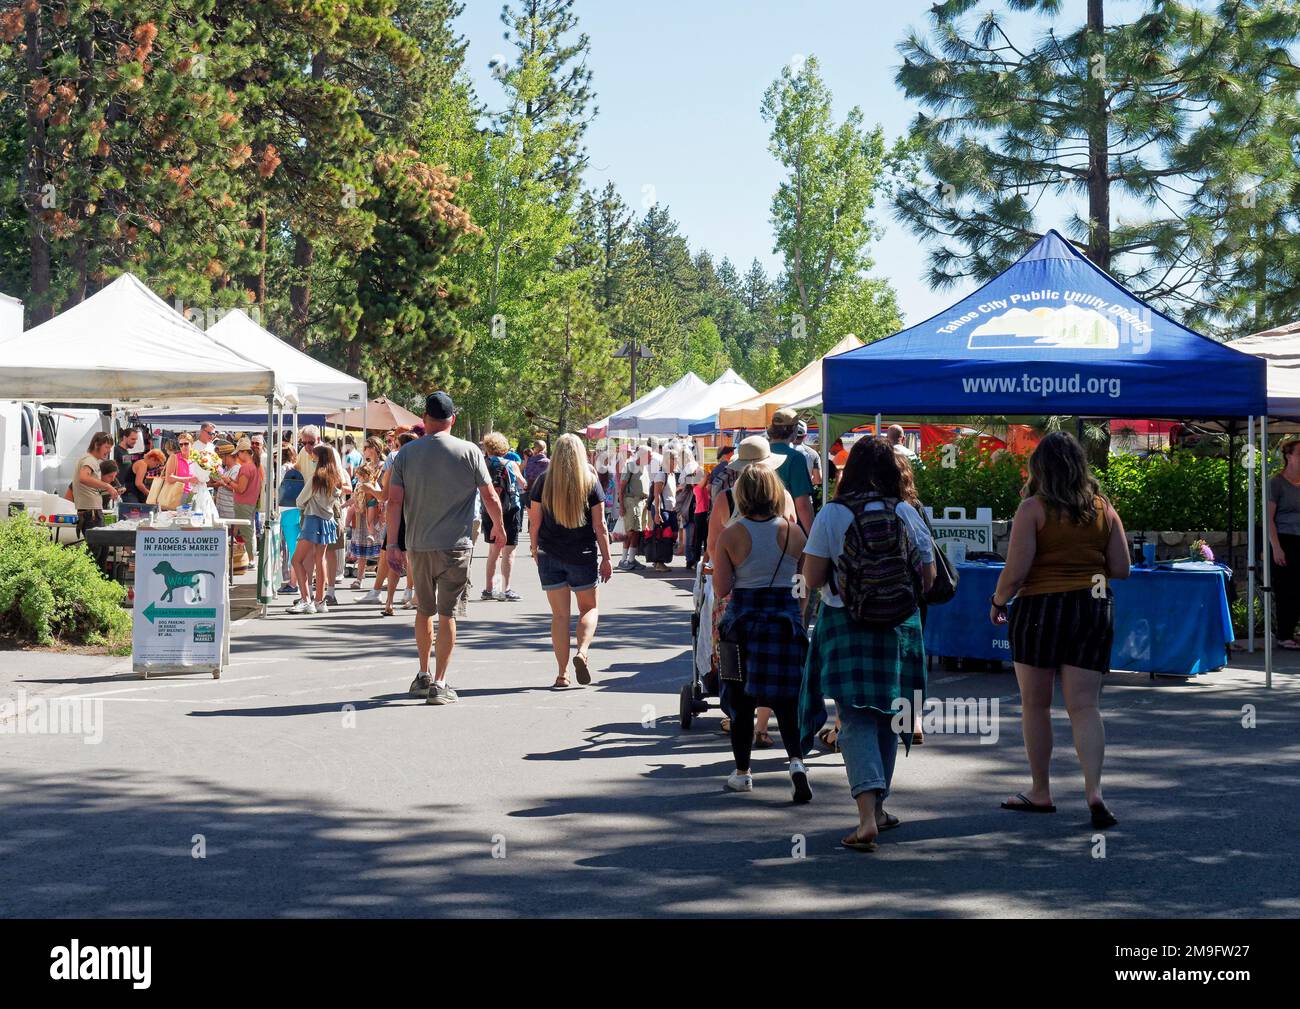 Le marché populaire et bien fréquenté des agriculteurs de Tahoe City, comté de placer, Californie, qui vend de la viande, des fruits, des légumes et des produits artisanaux en juin 2022 Banque D'Images